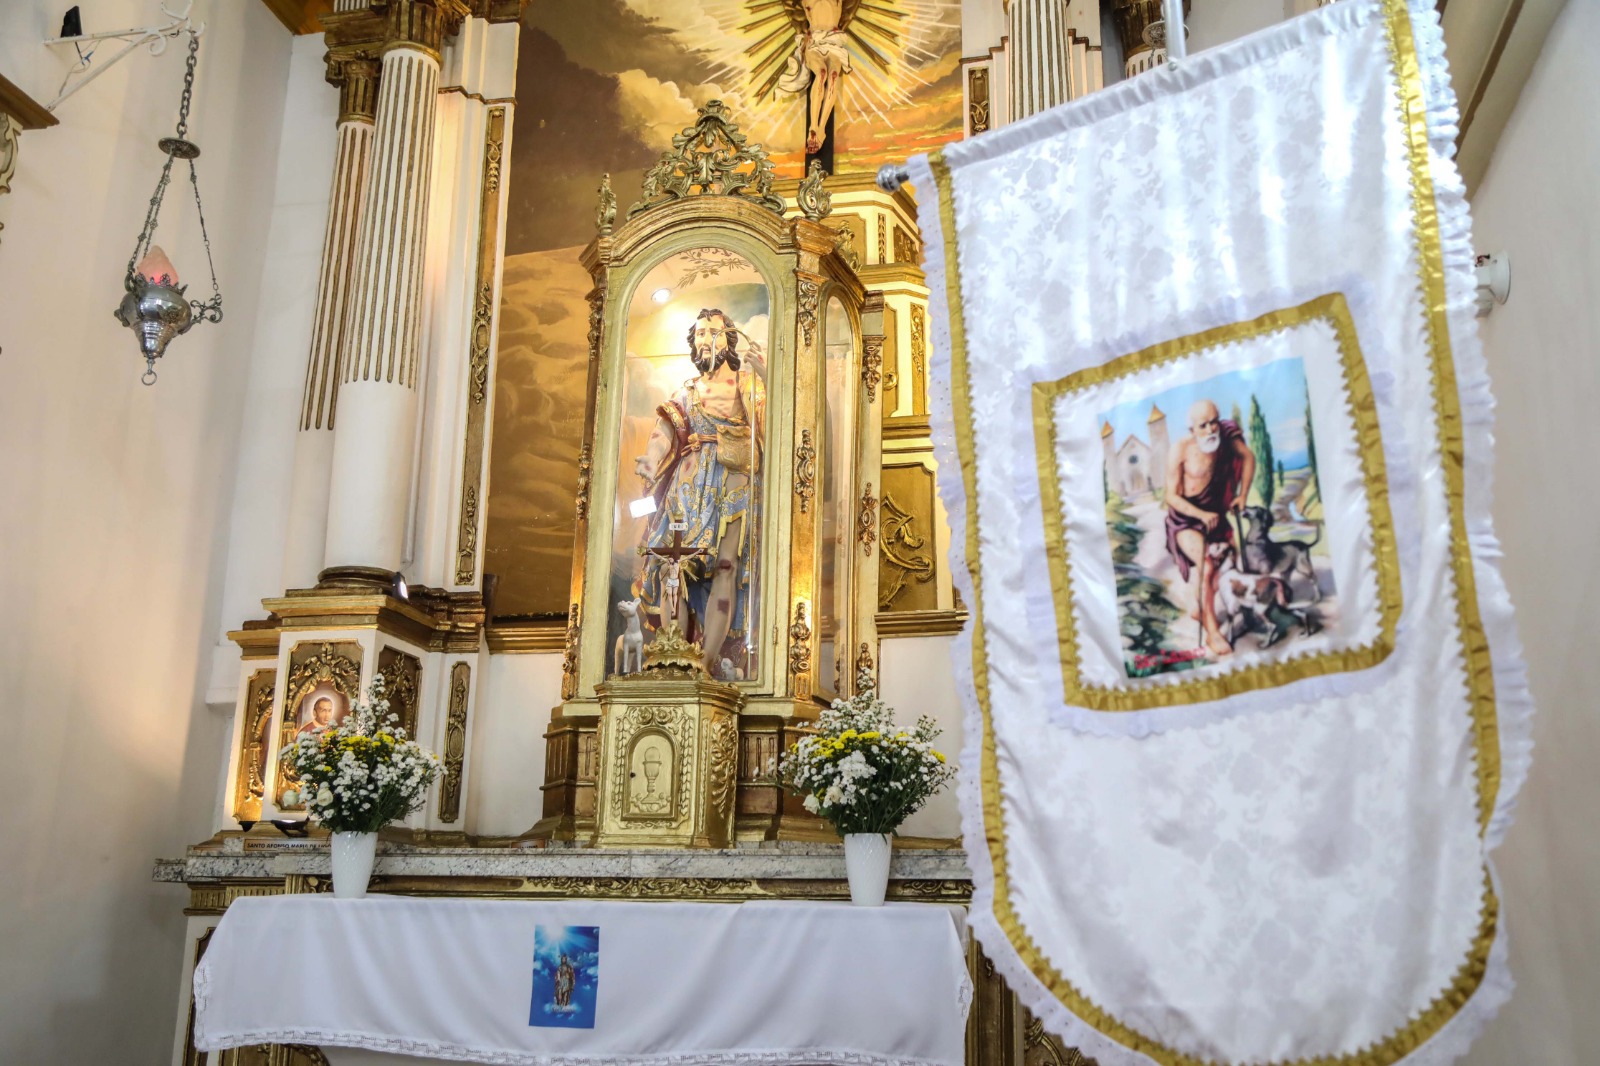 Festa de São Lázaro ocorre em Salvador neste domingo